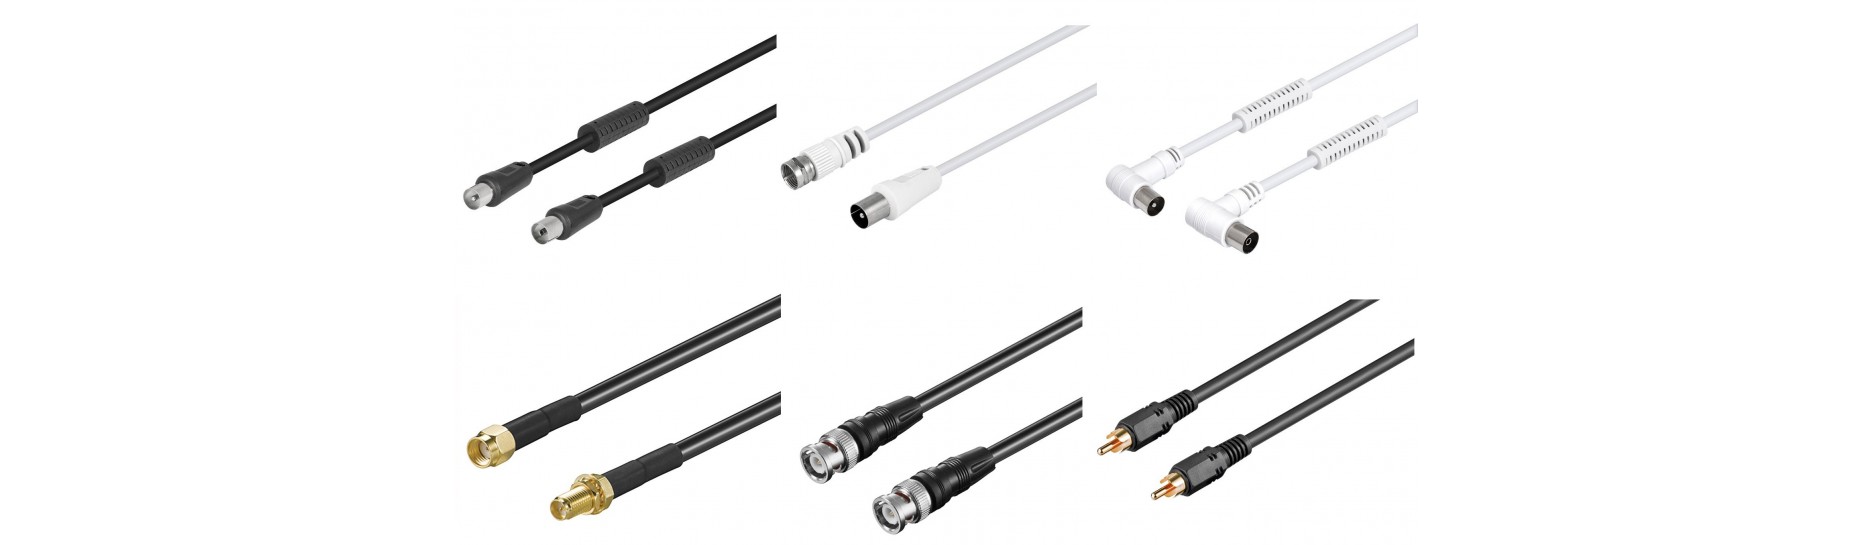 Cables y conexiones de Antena y RF|Comprar Antena y RF